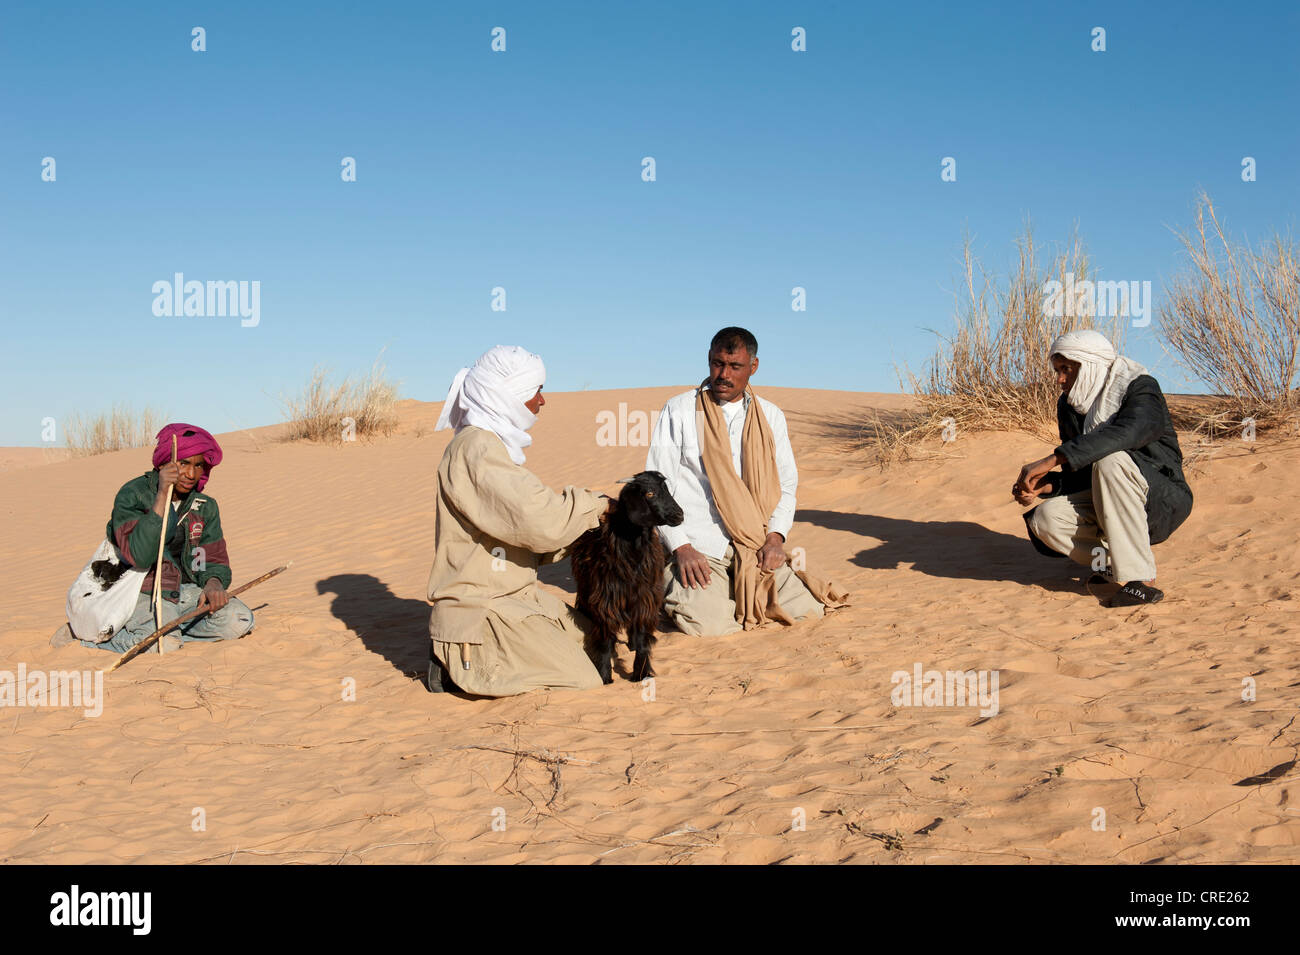 Verhandlung, Beduinen, Kauf einer Ziege, Sanddünen, Sahara Wüste zwischen Douz und Ksar Ghilane, Süd-Tunesien, Tunesien, Maghreb Stockfoto